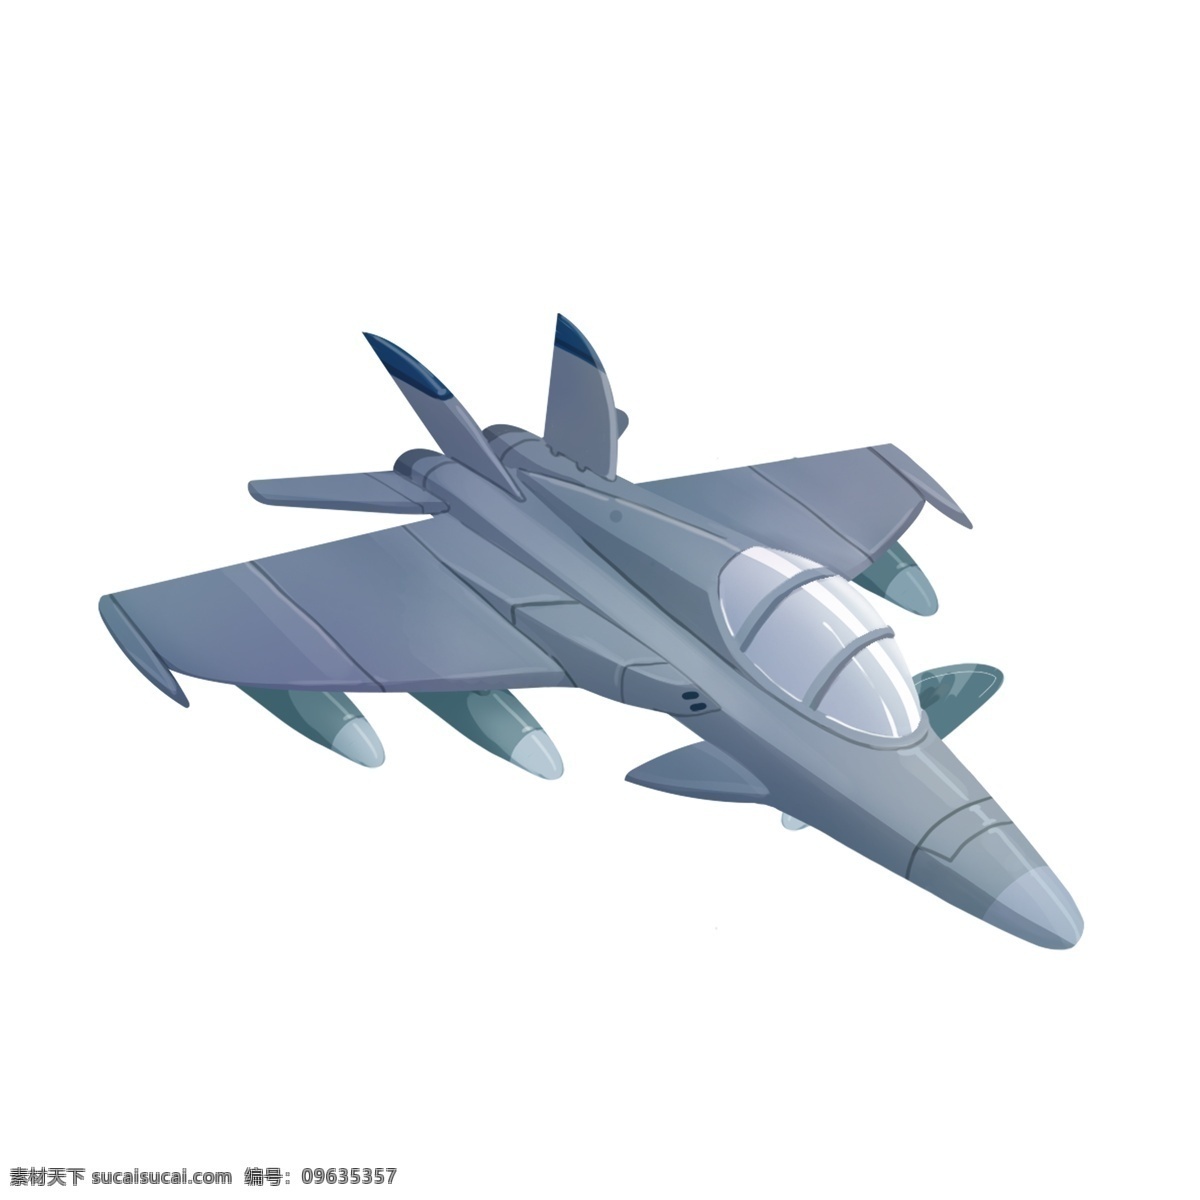 军事 战争 元素 飞机 战斗机 空军 机器 导弹 军事元素 战争元素 建军节